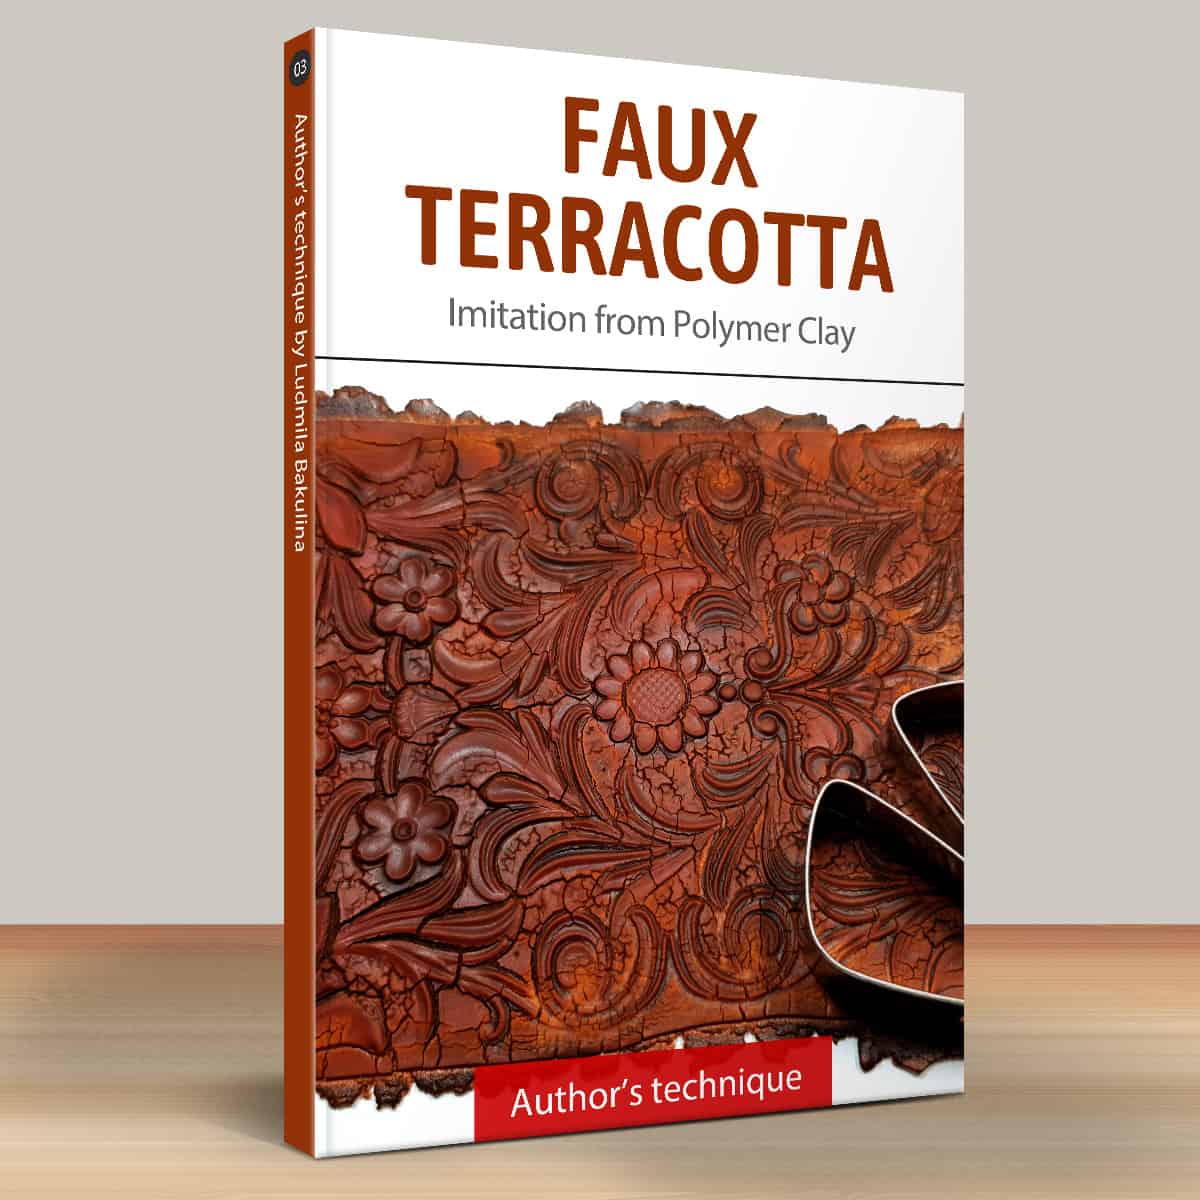 Part 1: Faux Terracotta